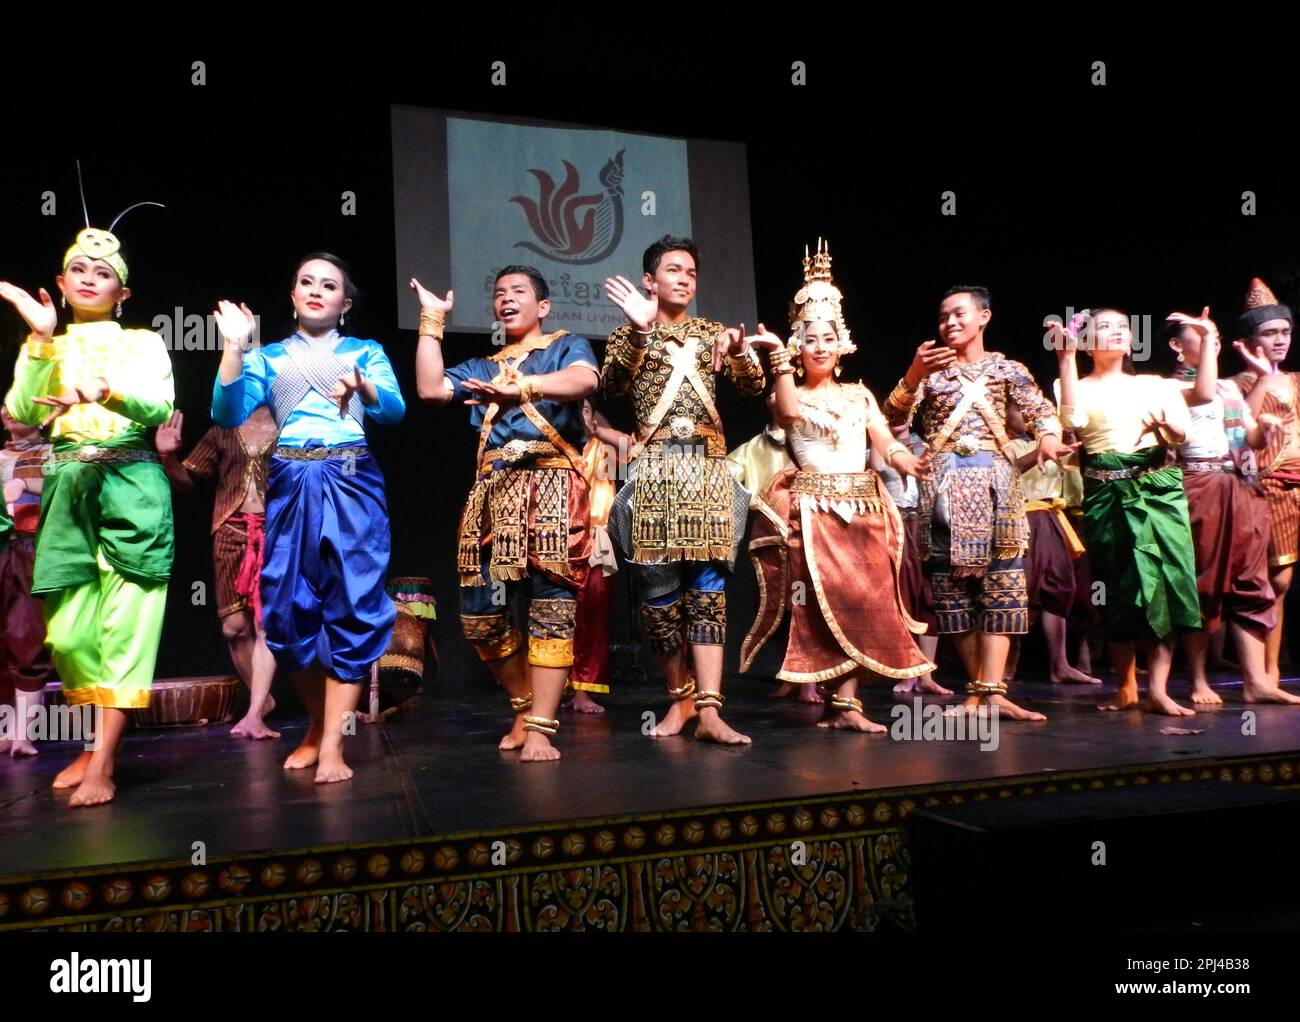 Kambodscha, Phnom Penh: Traditionelle Tanzvorstellung im Nationalmuseum, einschließlich einer Vielzahl klassischer und folkloristischer Tänze. Das Finale. Stockfoto